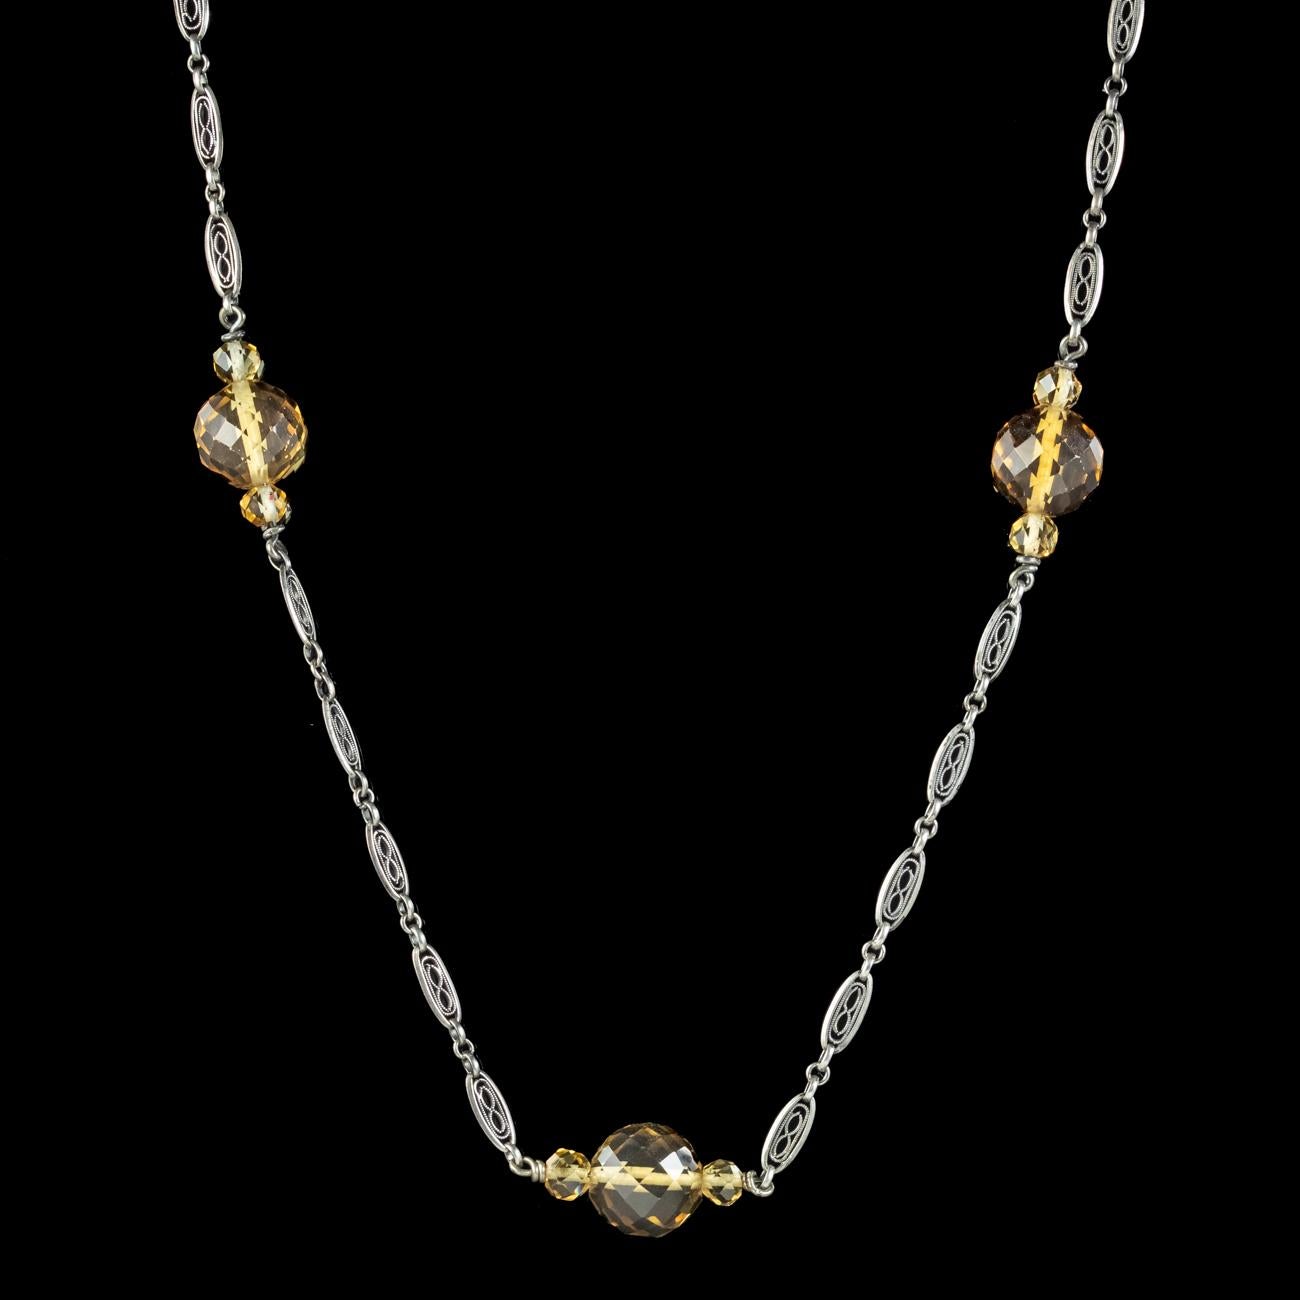 Briolette Cut Antique Edwardian Citrine Bead Necklace Silver Chain For Sale